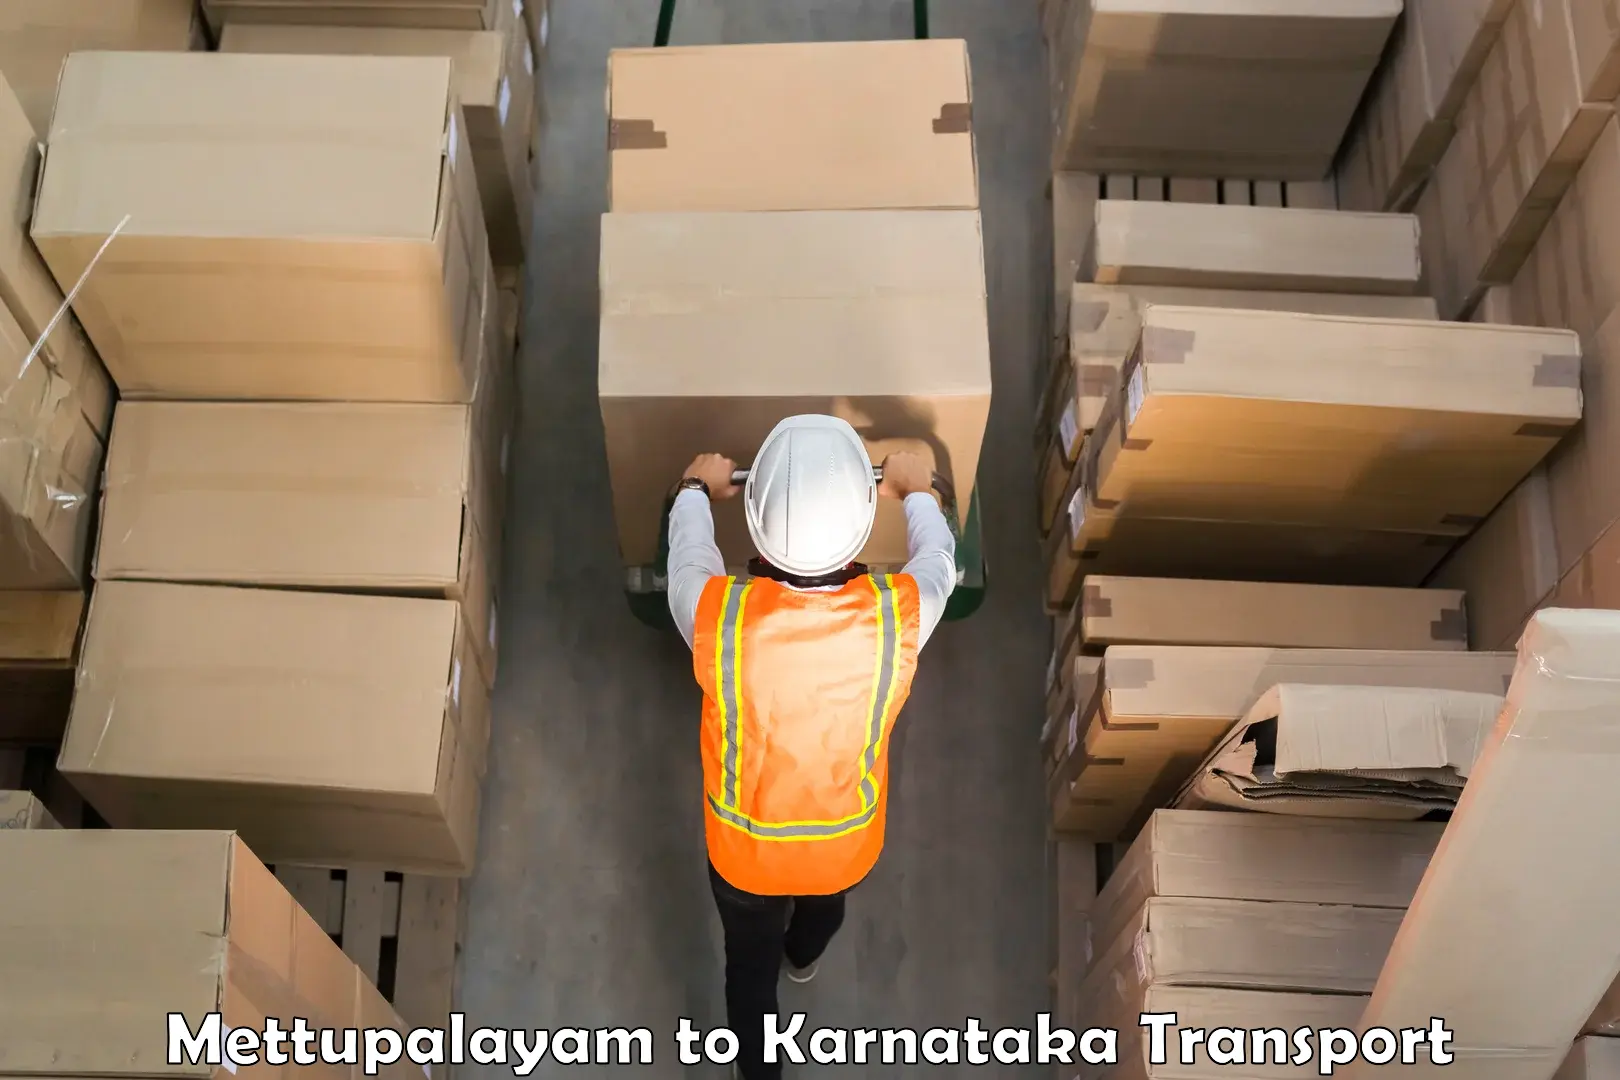 Commercial transport service Mettupalayam to Karnataka